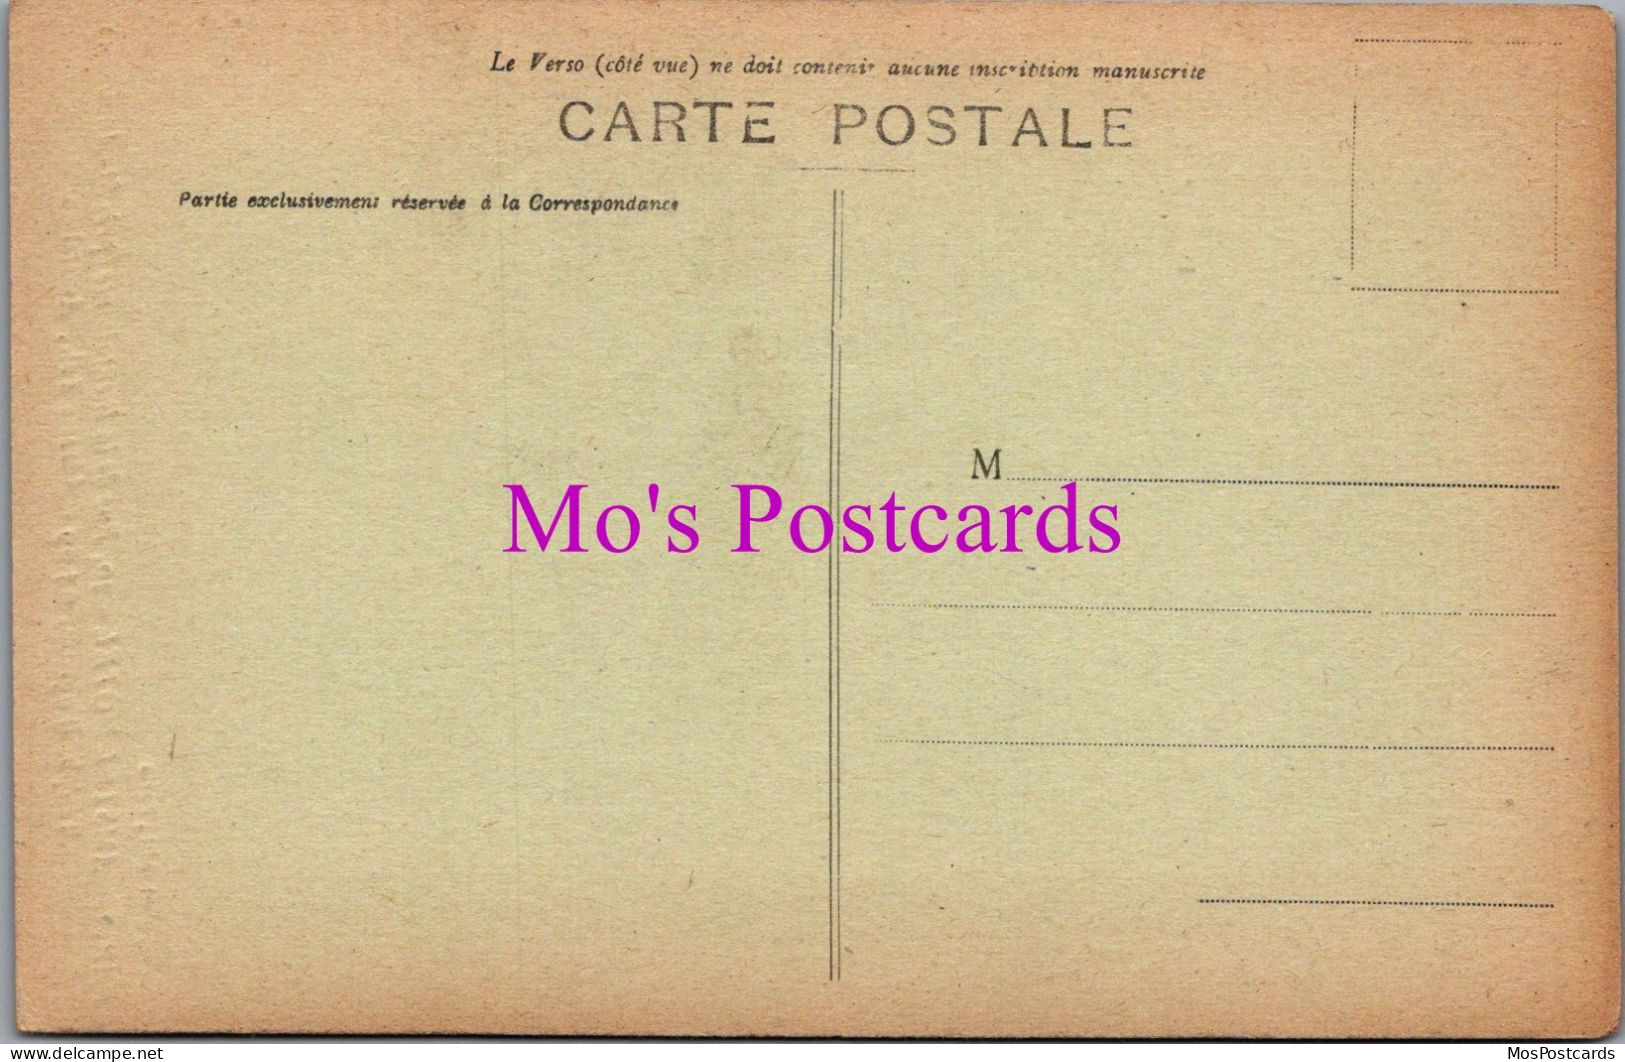 France Postcard - Paris, Amstelhotel, 30 Rue De La Bienfaisance DZ325 - Pubs, Hotels, Restaurants